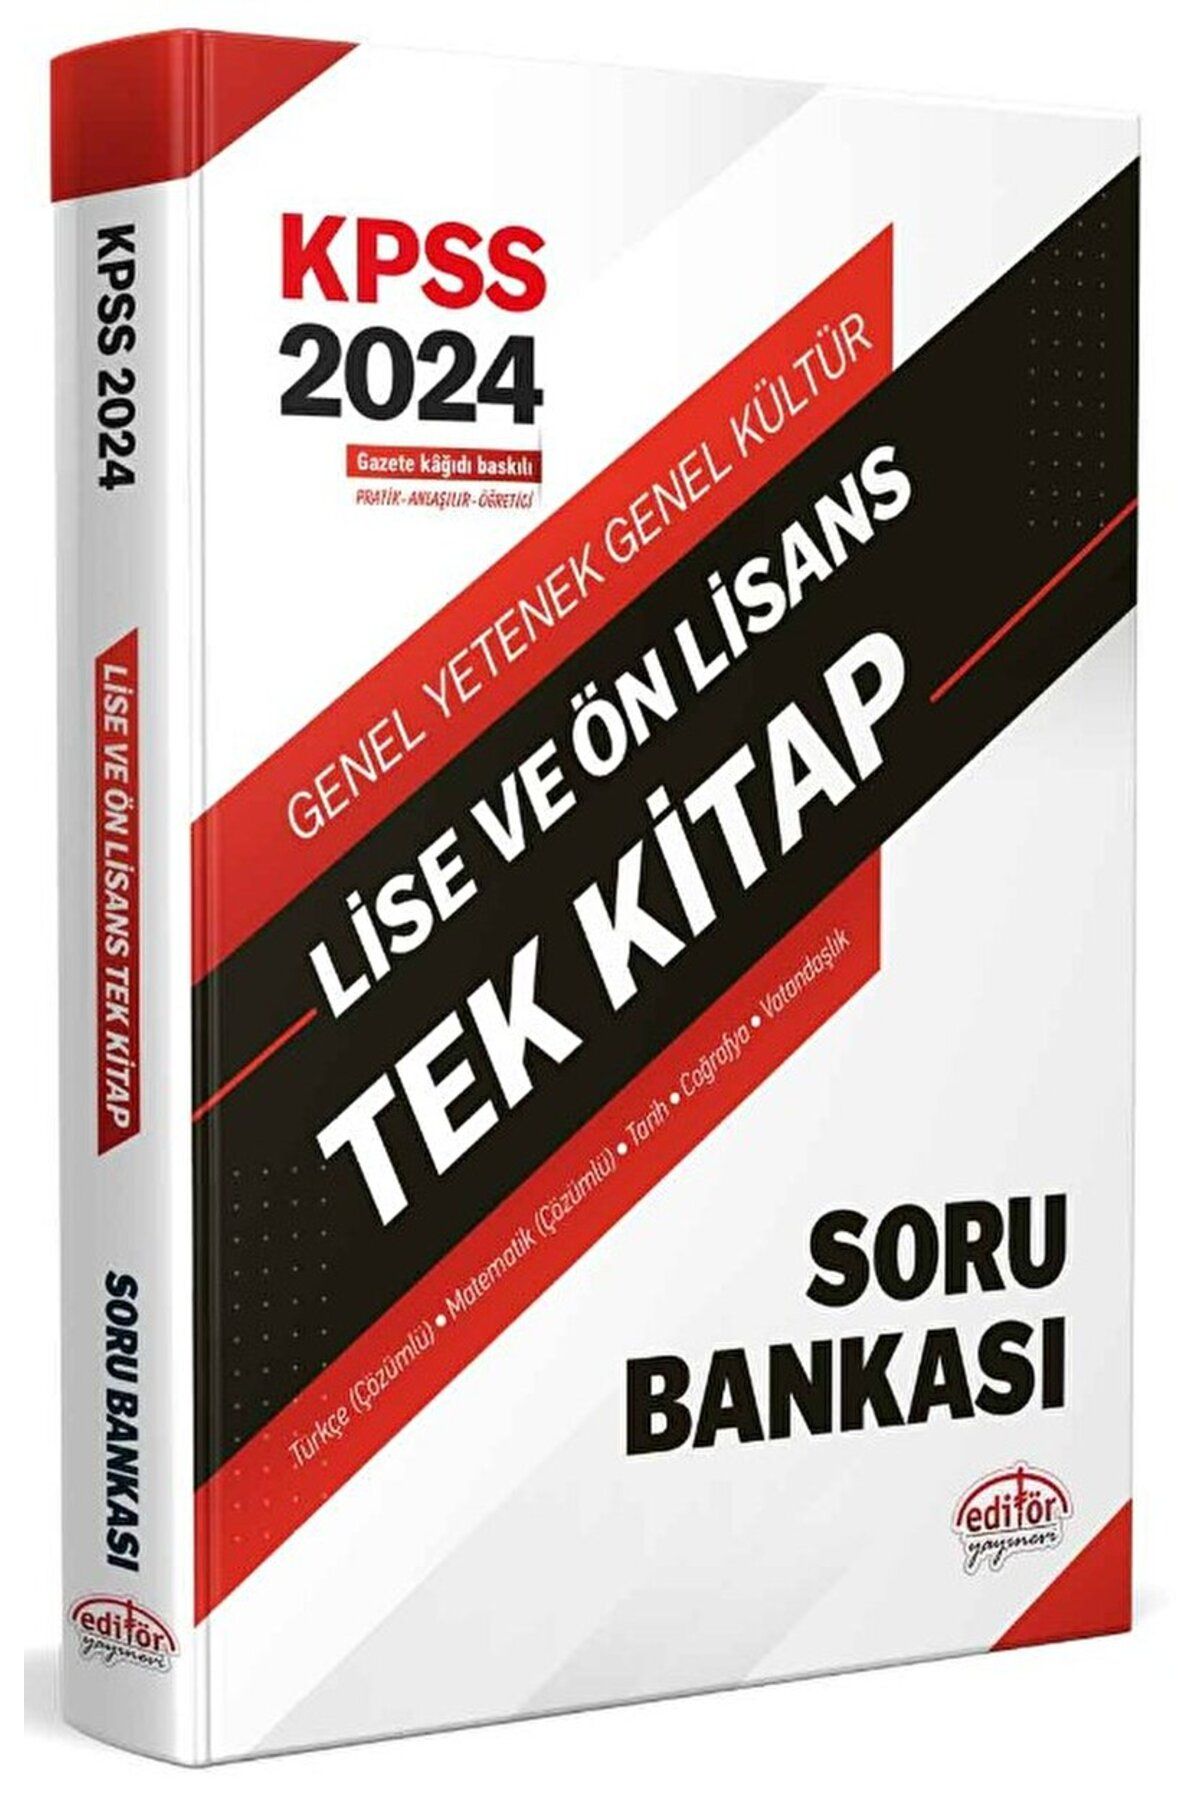 Editör Yayınevi 2024 KPSS Lise ve Ön Lisans Tek Kitap Soru Bankası / Kolektif / Editör Yayınevi / 9786052805619